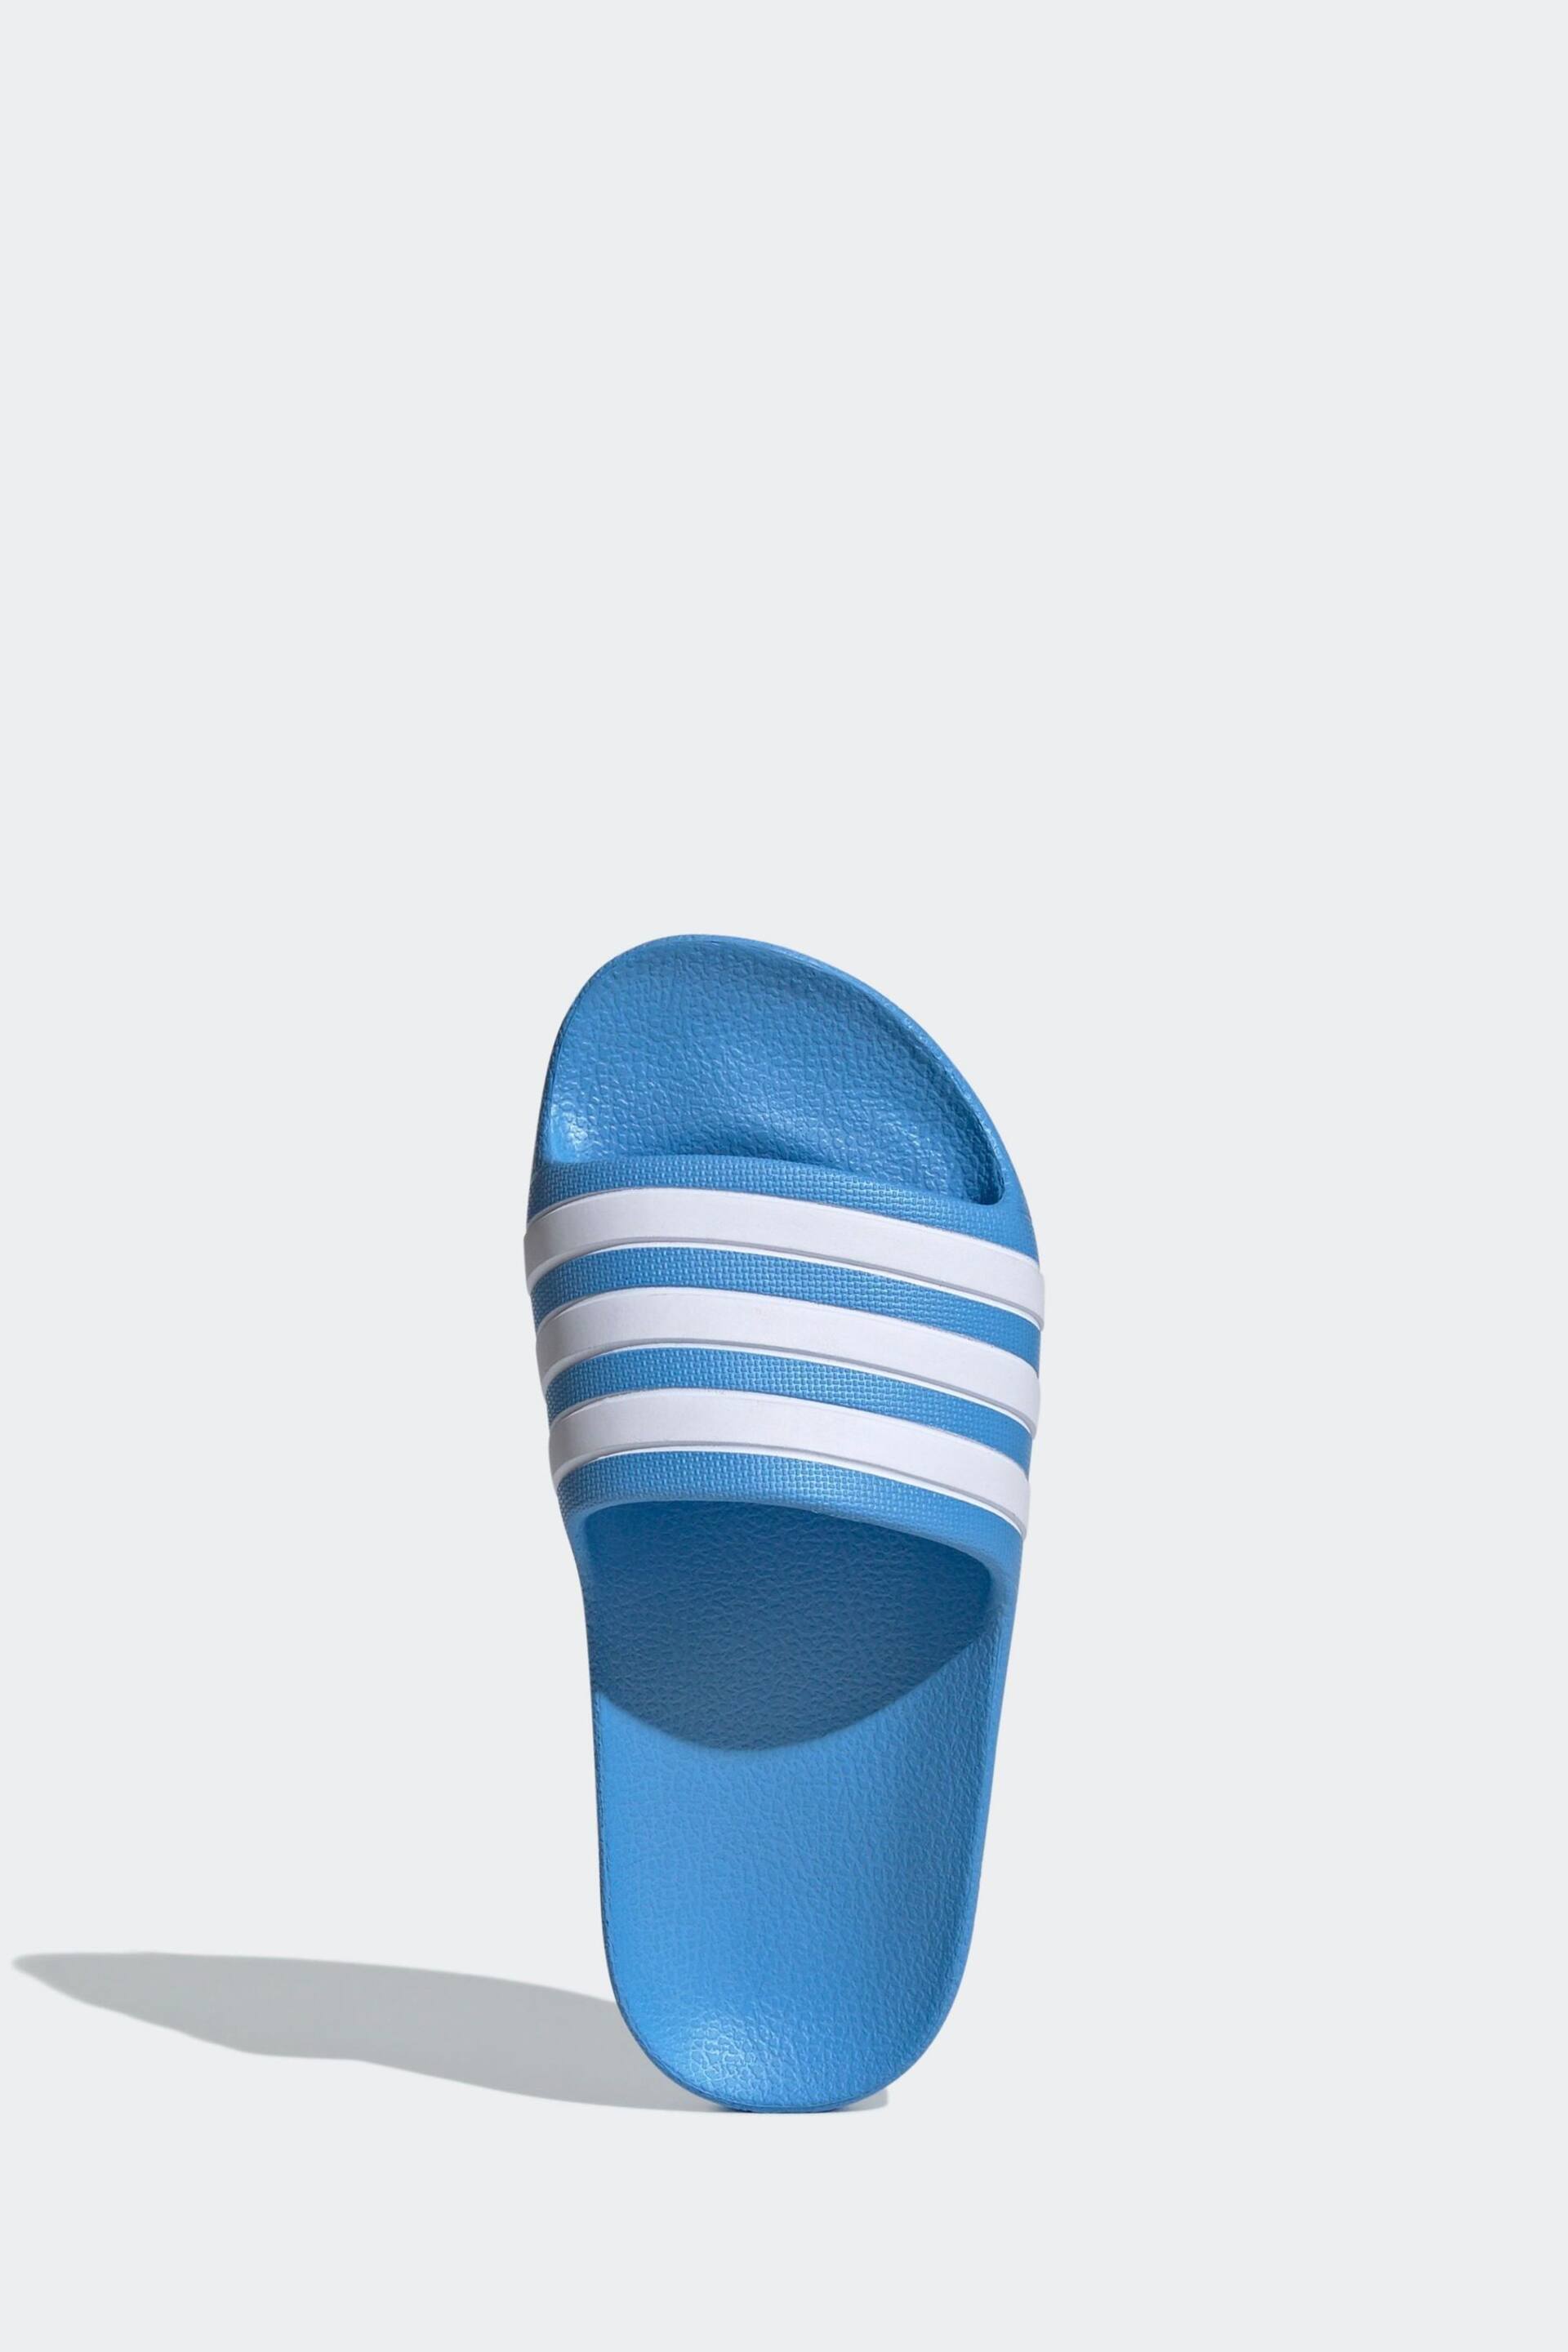 adidas Blue Adilette Youth Kids Sliders - Image 6 of 11